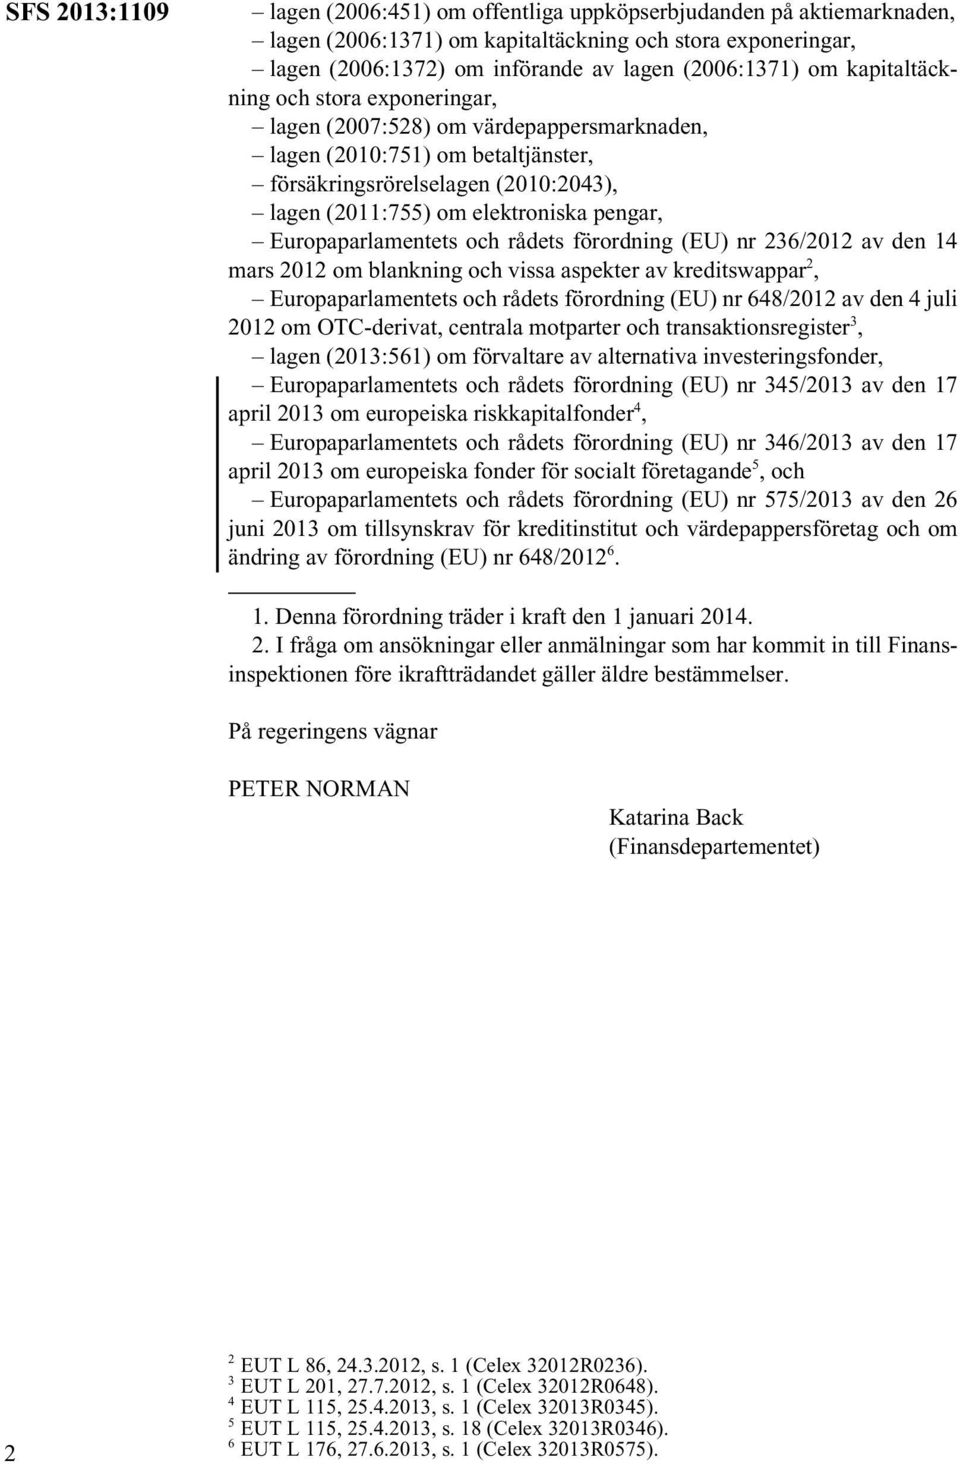 Europaparlamentets och rådets förordning (EU) nr 236/2012 av den 14 mars 2012 om blankning och vissa aspekter av kreditswappar 2, Europaparlamentets och rådets förordning (EU) nr 648/2012 av den 4